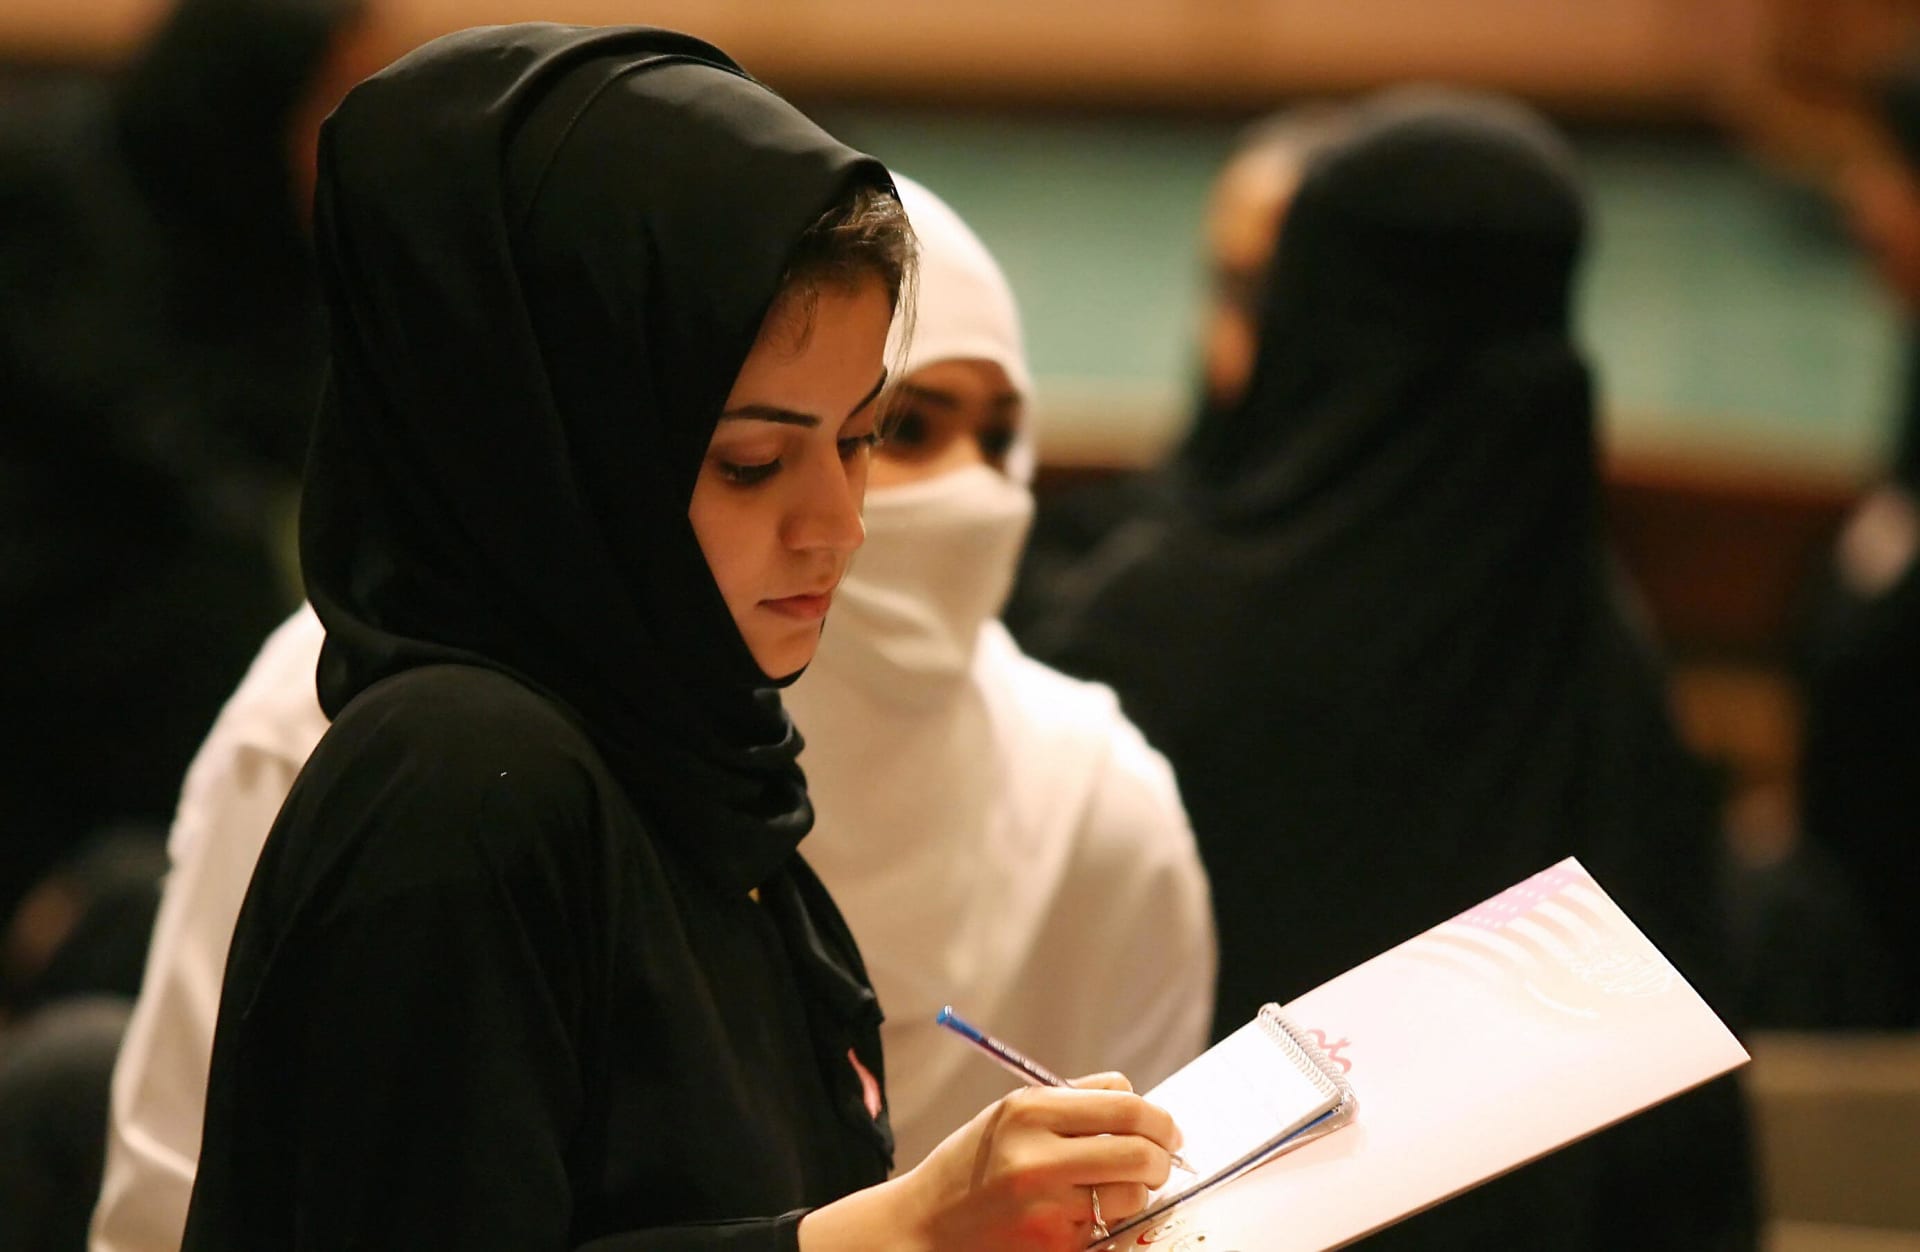 التقشف في الميزانية قد يحرم الطلاب السعوديين من حلم الدراسة في الخارج